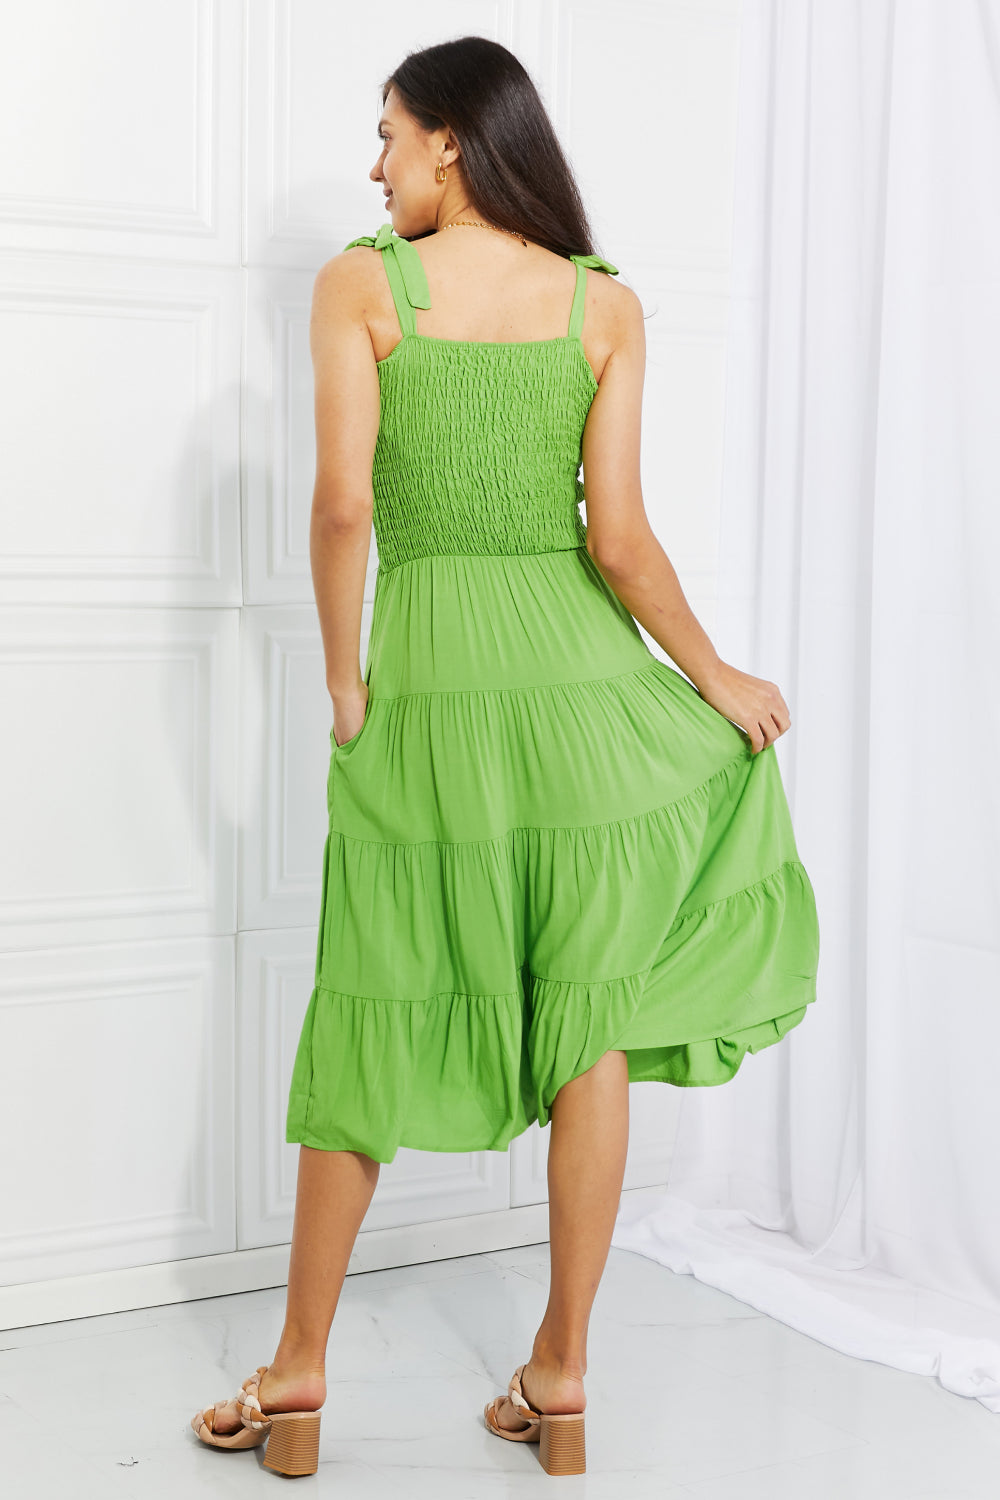 Madeline Pocket Dress in Lively Lime